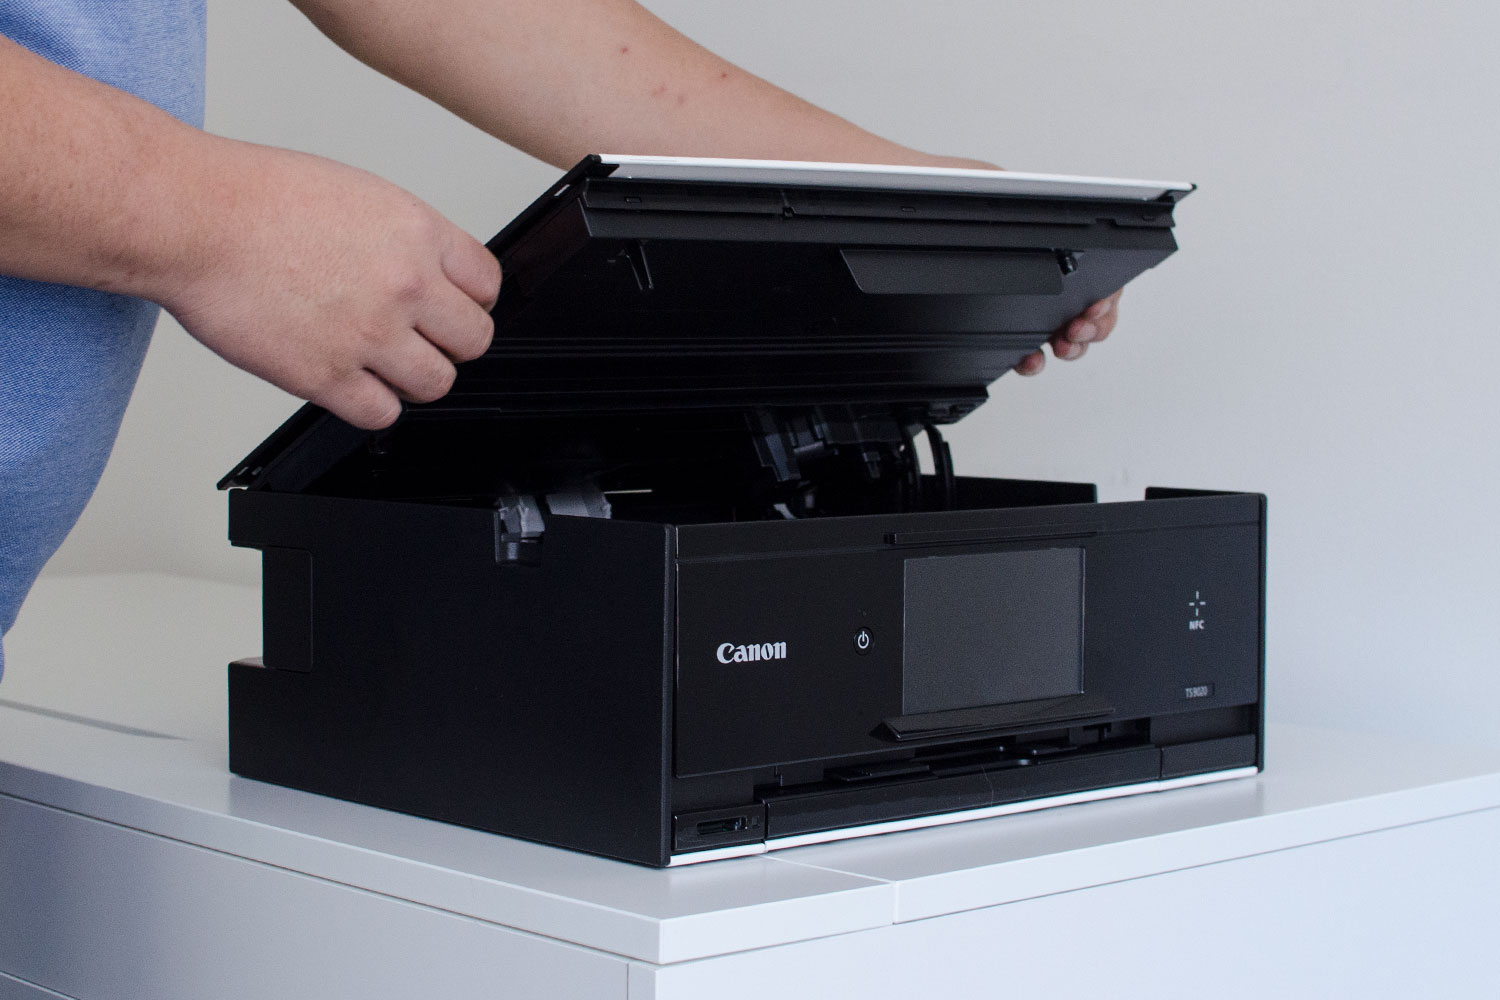 Canon PIXMA TS9050 printer